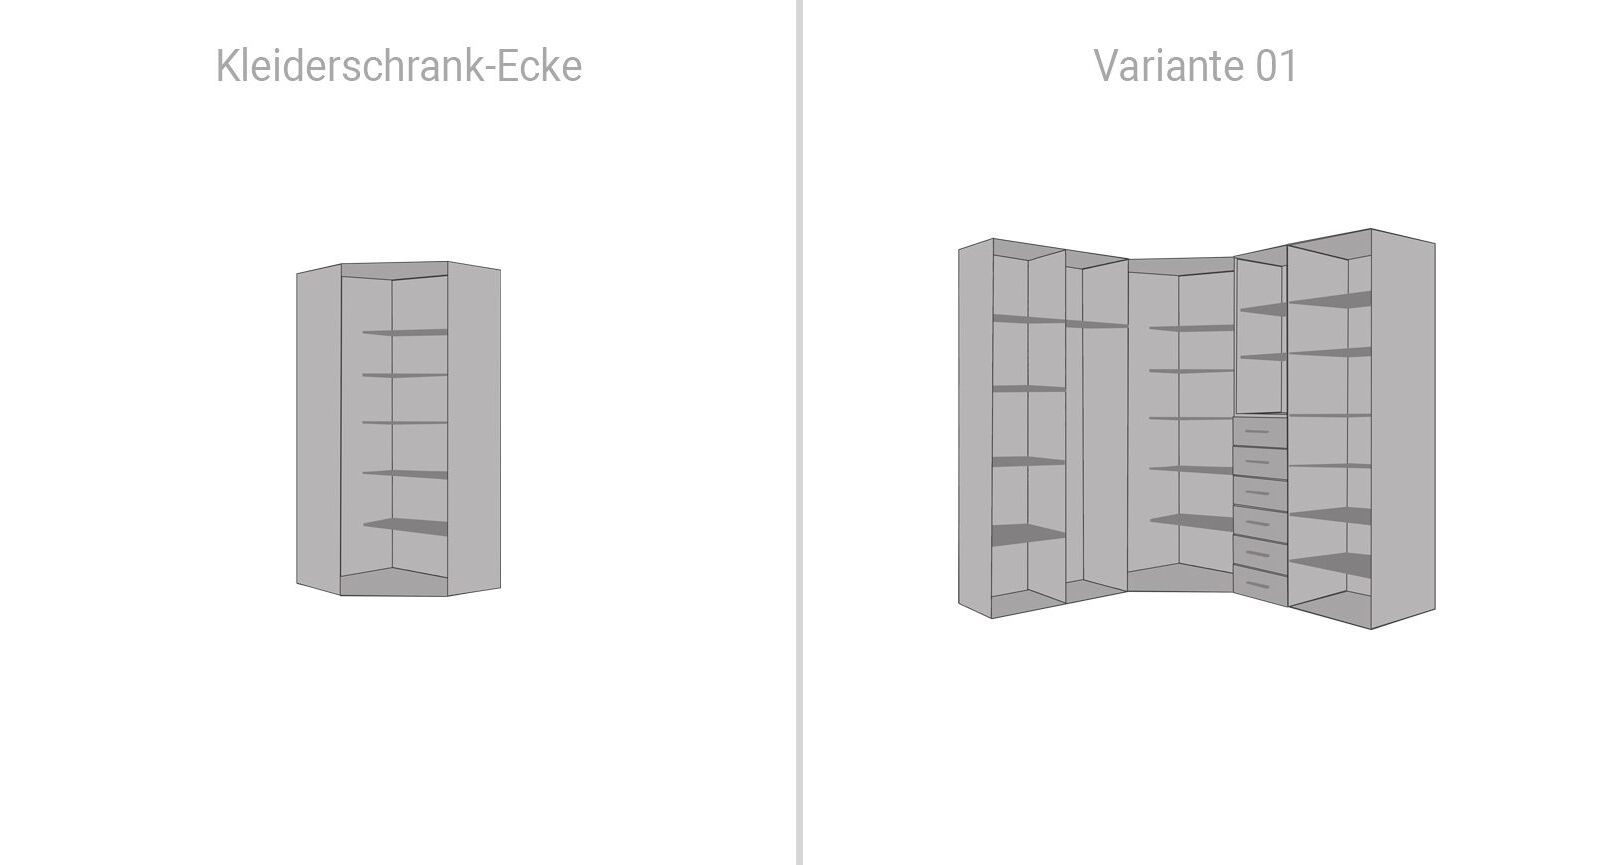 Innenaufteilung von Kleiderschrank-Ecke und Eck-Kleiderschrank Divisa Variante 01